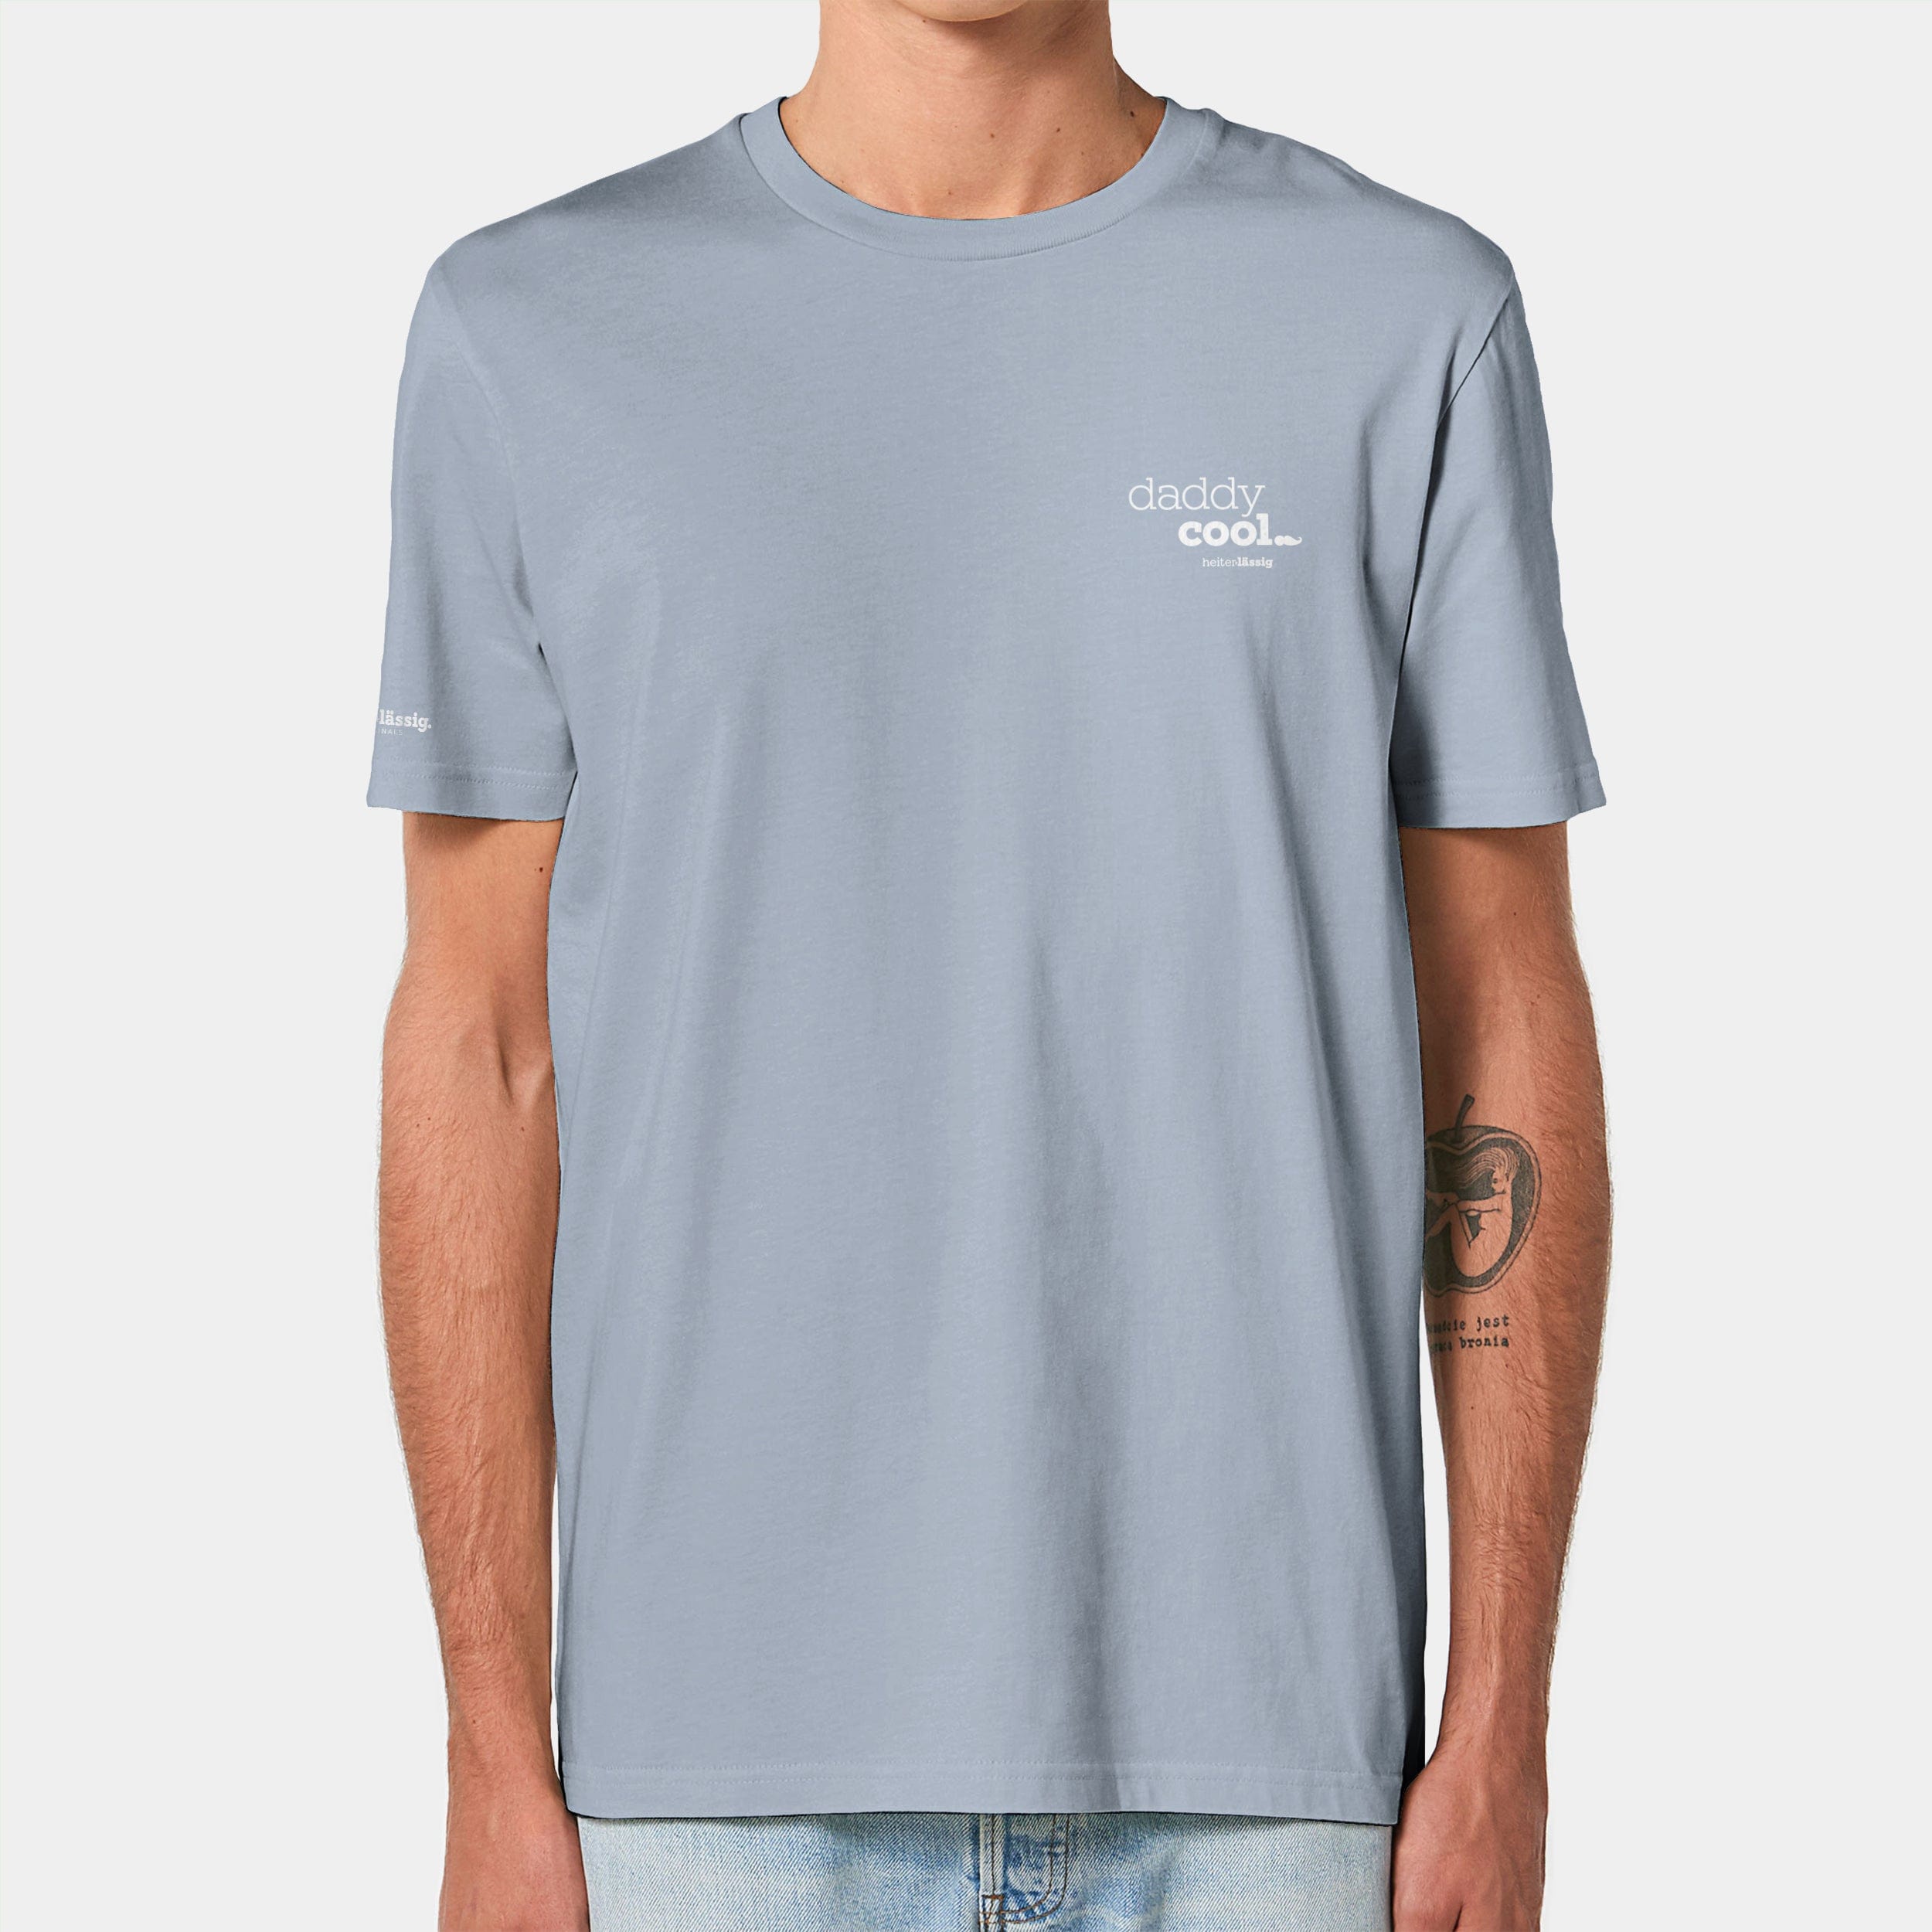 HEITER & LÄSSIG T-Shirt ORIGINAL "daddycool" XXS / serene blue - aus nachhaltiger und fairer Produktion